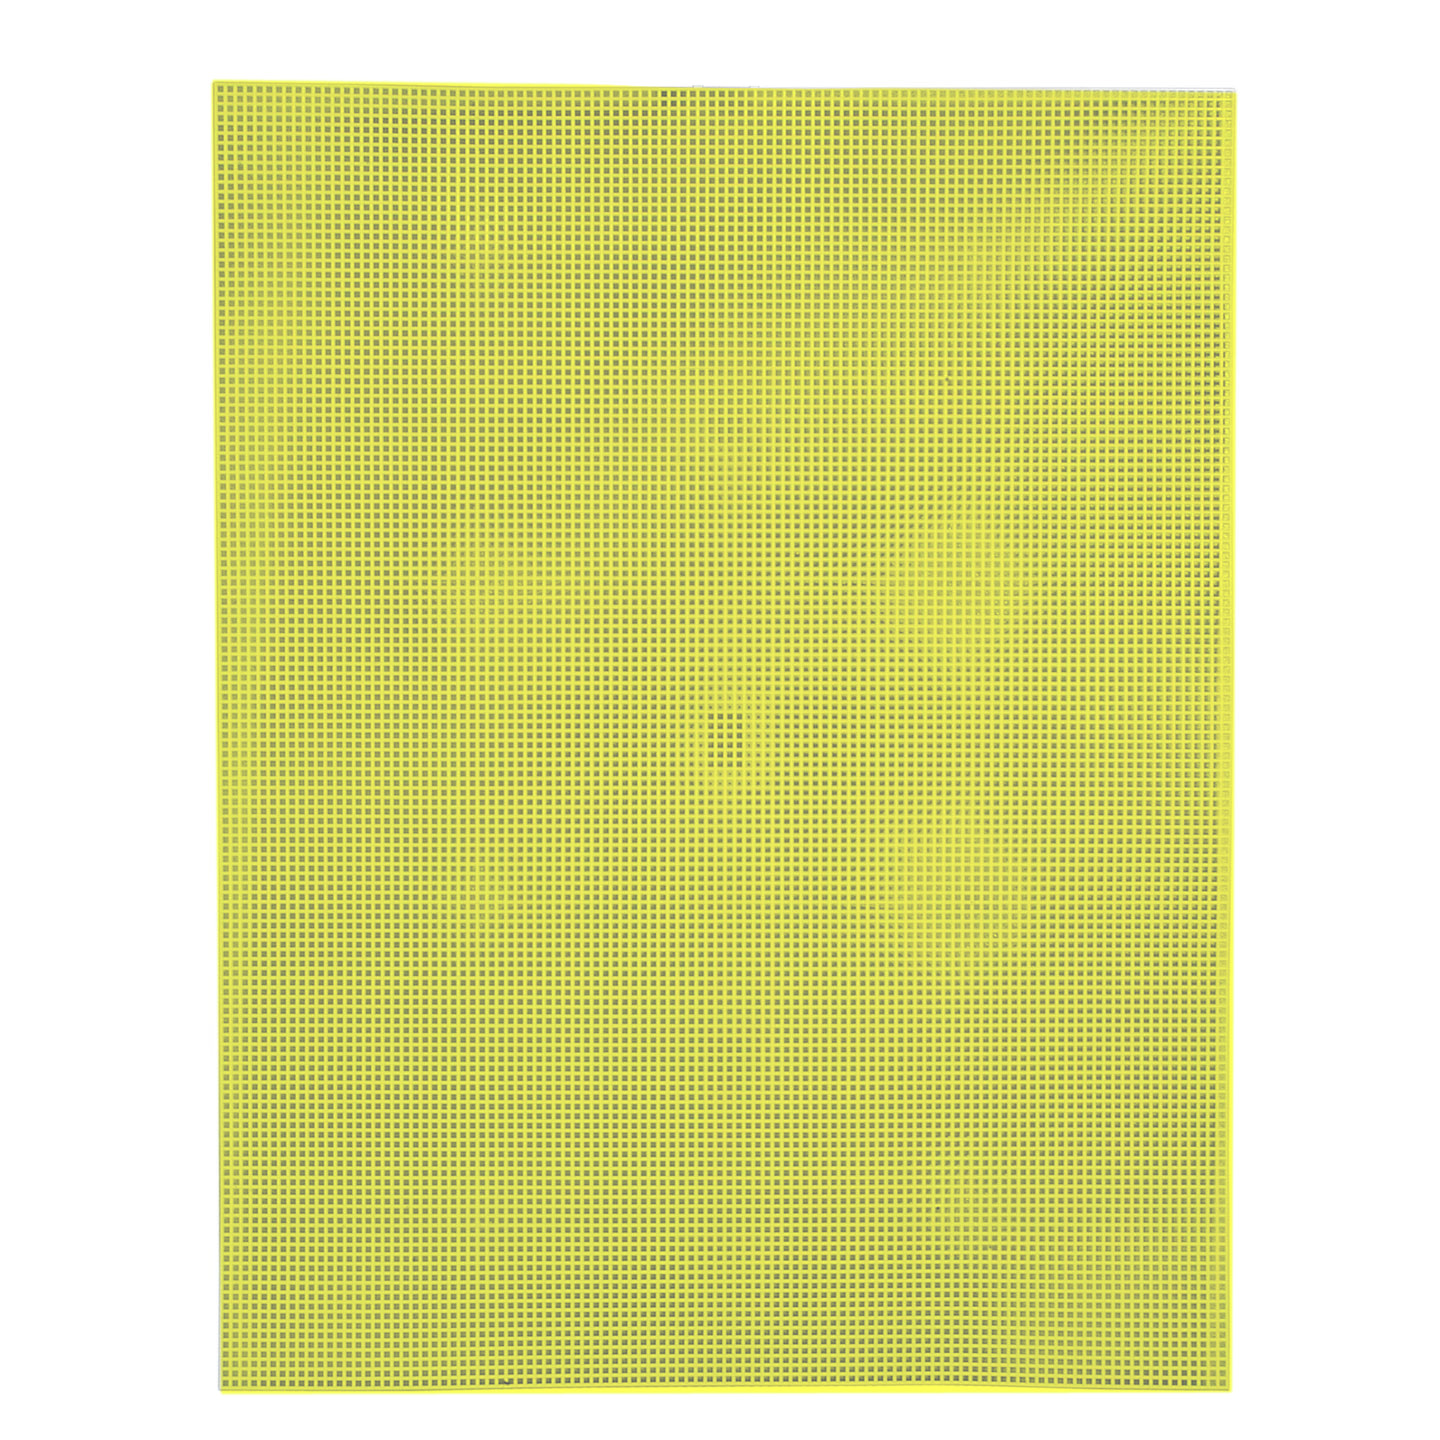 塑料帆布表——塑料网帆布- 10 count plastic Canvas Sheets - 10 mesh Plastic Canvas - Colored Plastic Canvas Sheets